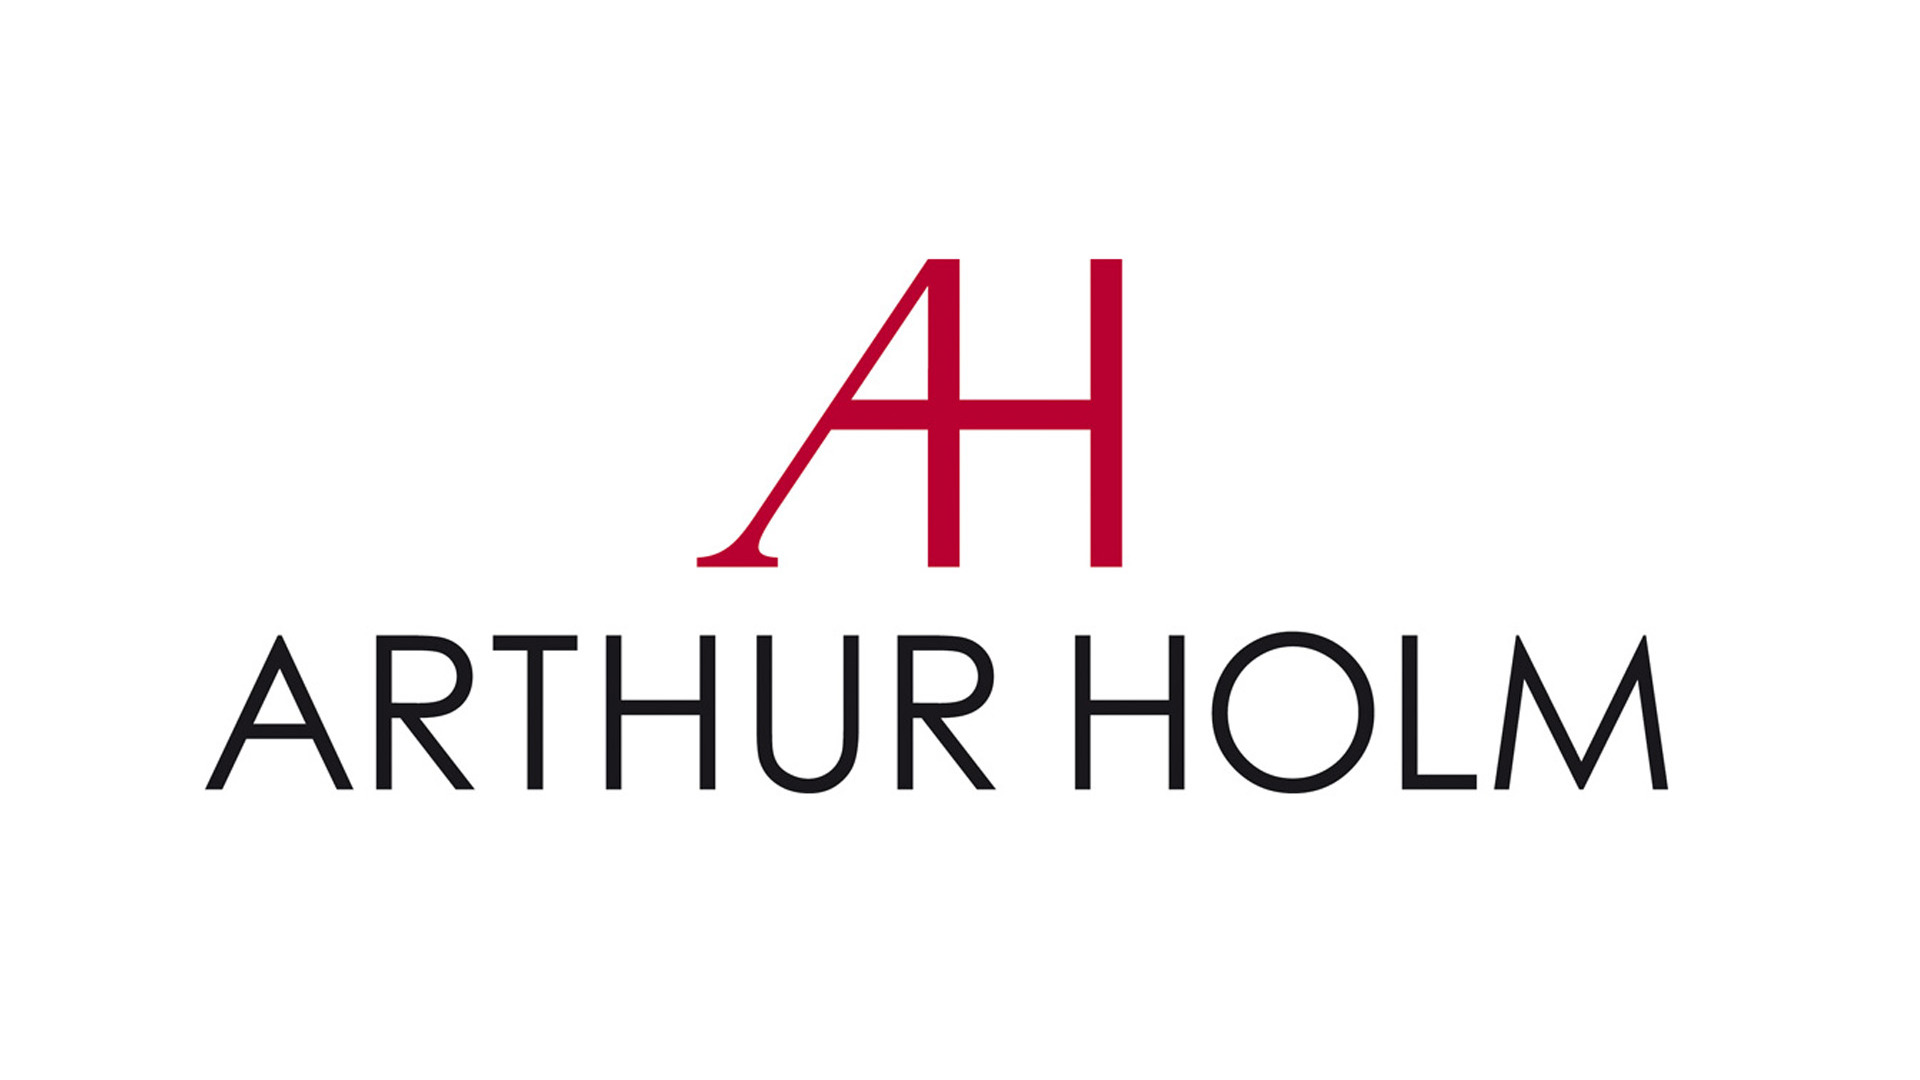 Изображения ARTHUR HOLM HDSDICD3